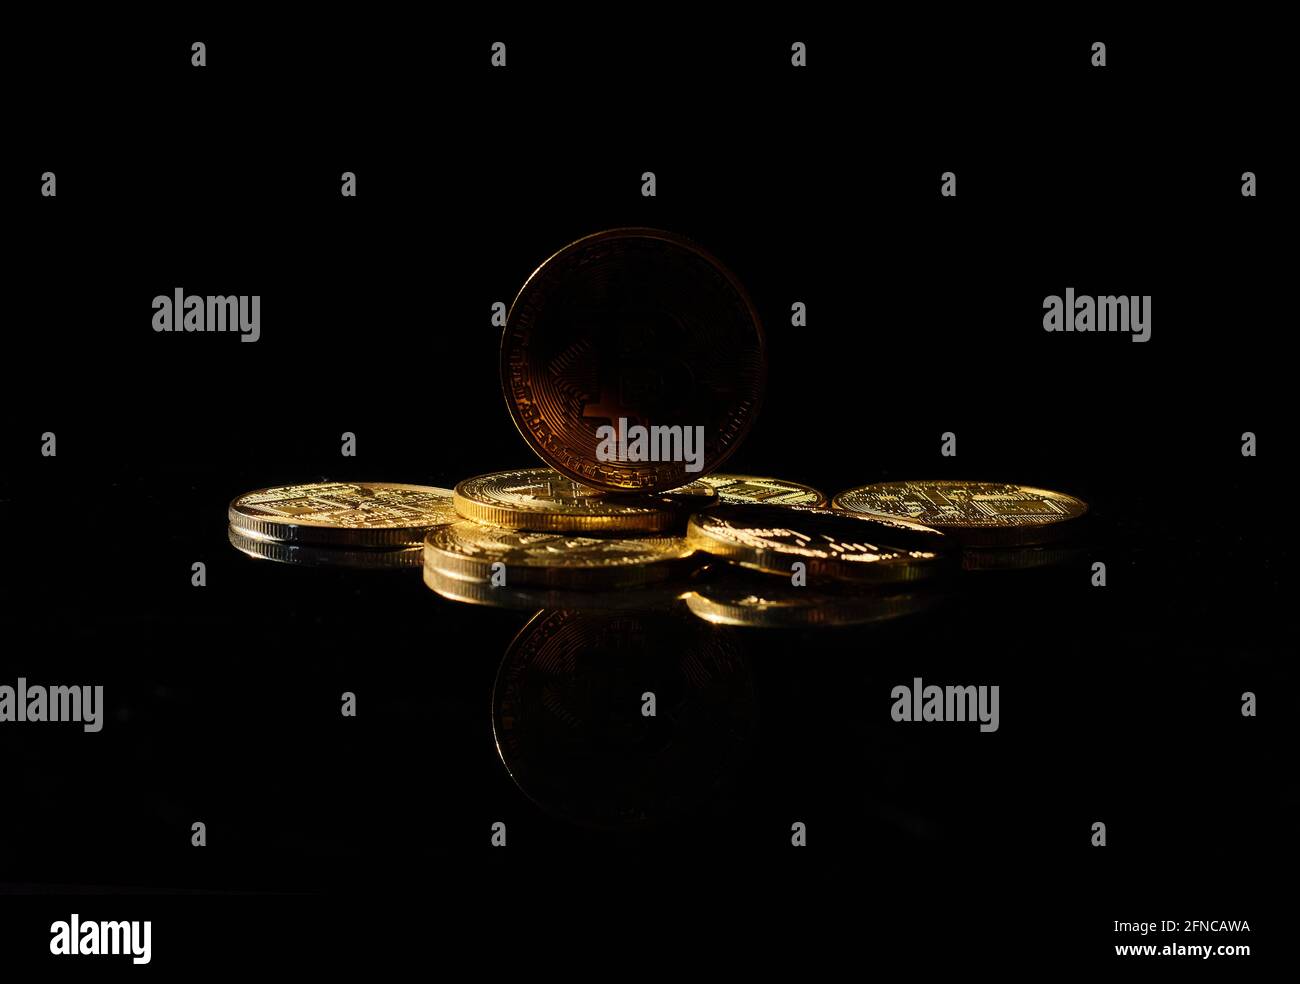 Dunkle Altmünze auf dem Markt. Unabhängige Stablecoin. Neue Kryptowährung auf einer Oberseite von Münzen gegen schwarze Spiegelfläche. Schwarzes Krypto-Token. NoName oder Stockfoto